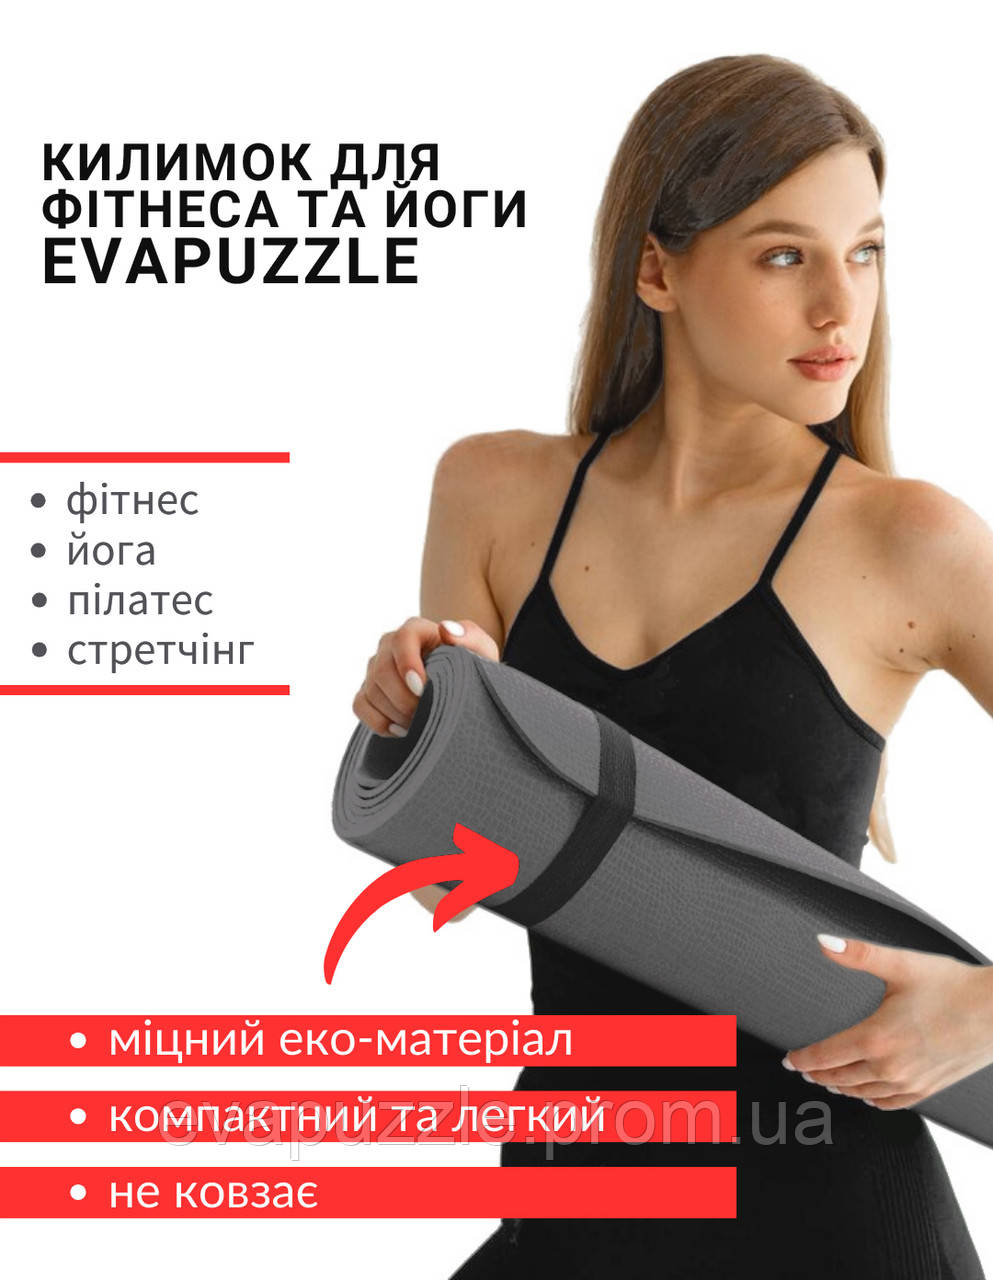 Спортивний килимок каремат для тренувань, занять йоги, фітнес 1500*600*3,5 мм сірий